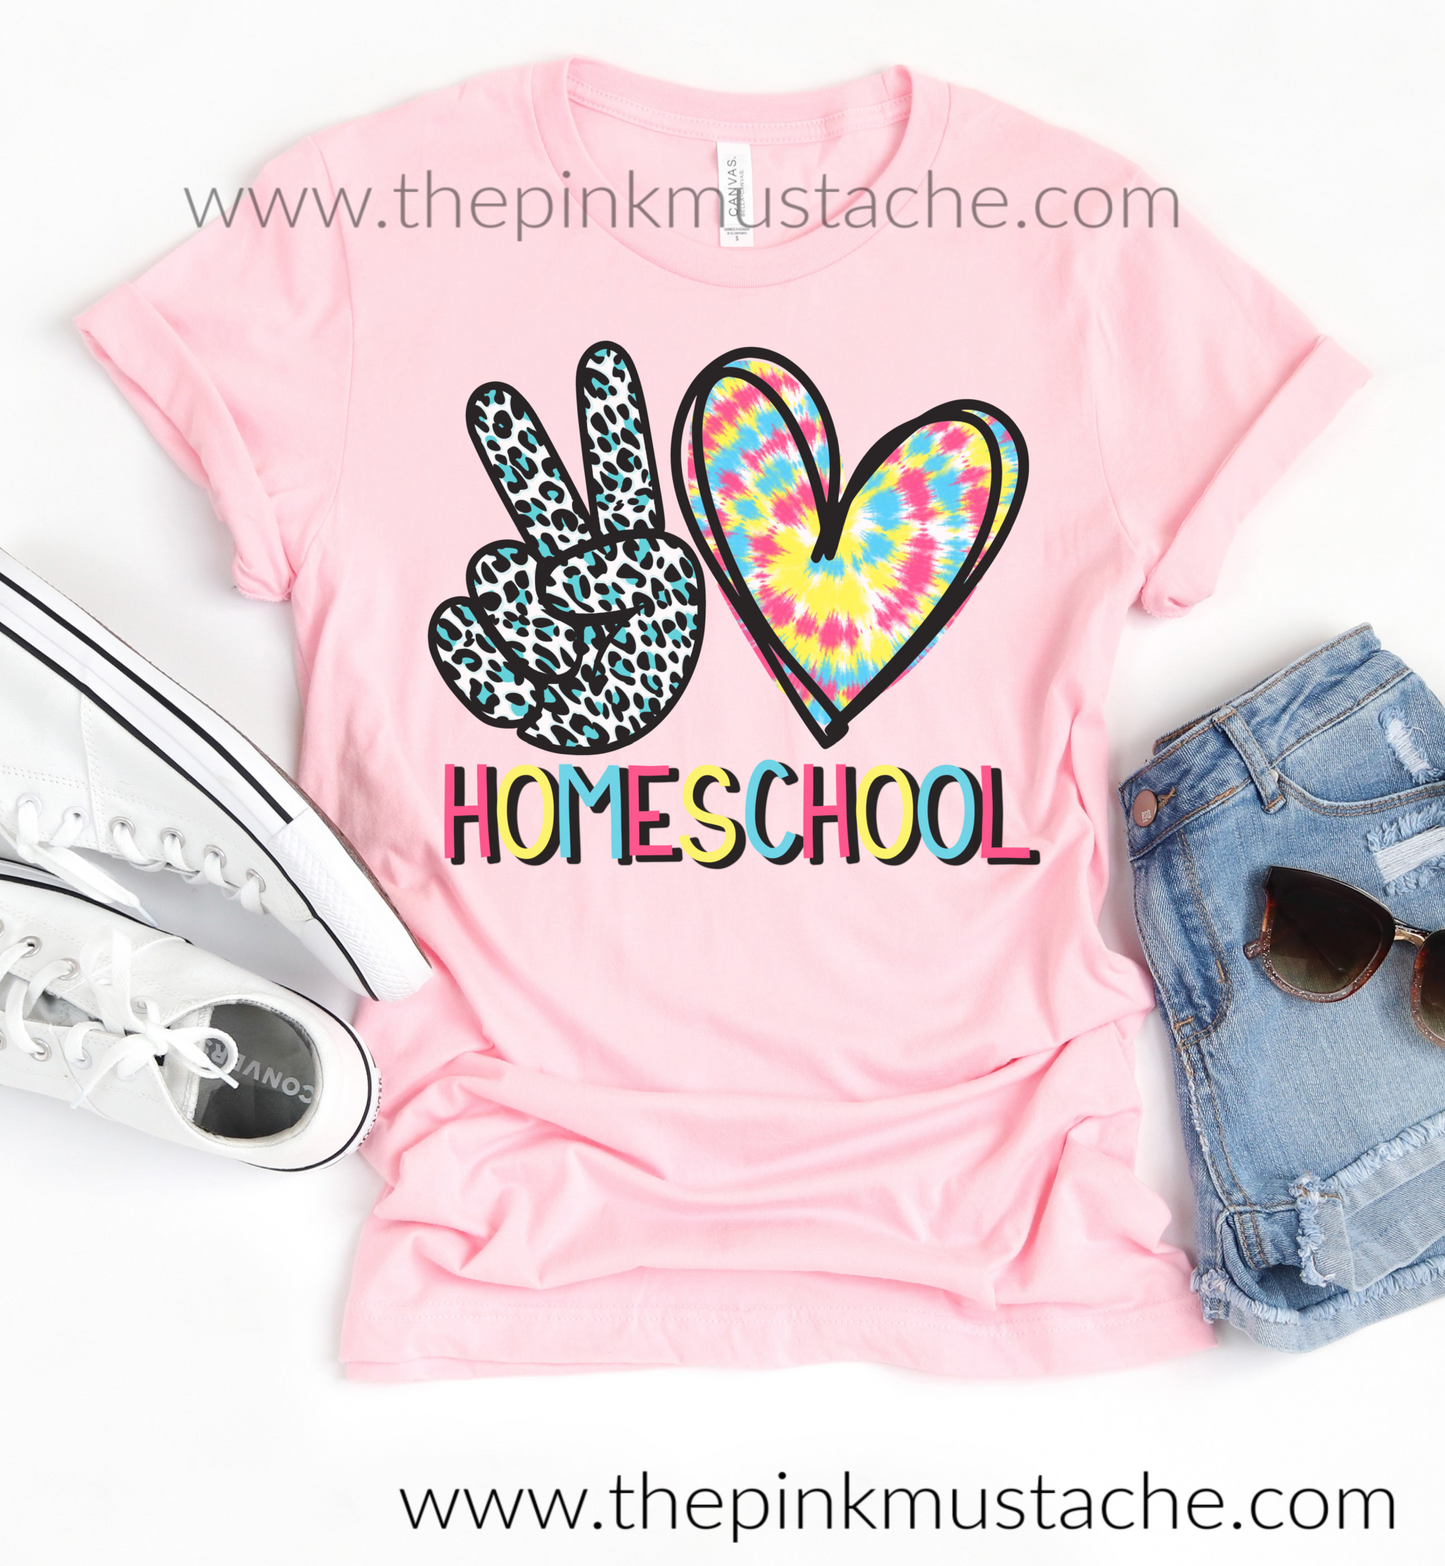 Peace Love Homeschool Tee - Leopard Tie Dye Tee / Back To School Tees (Home School) Homeschool Shirts